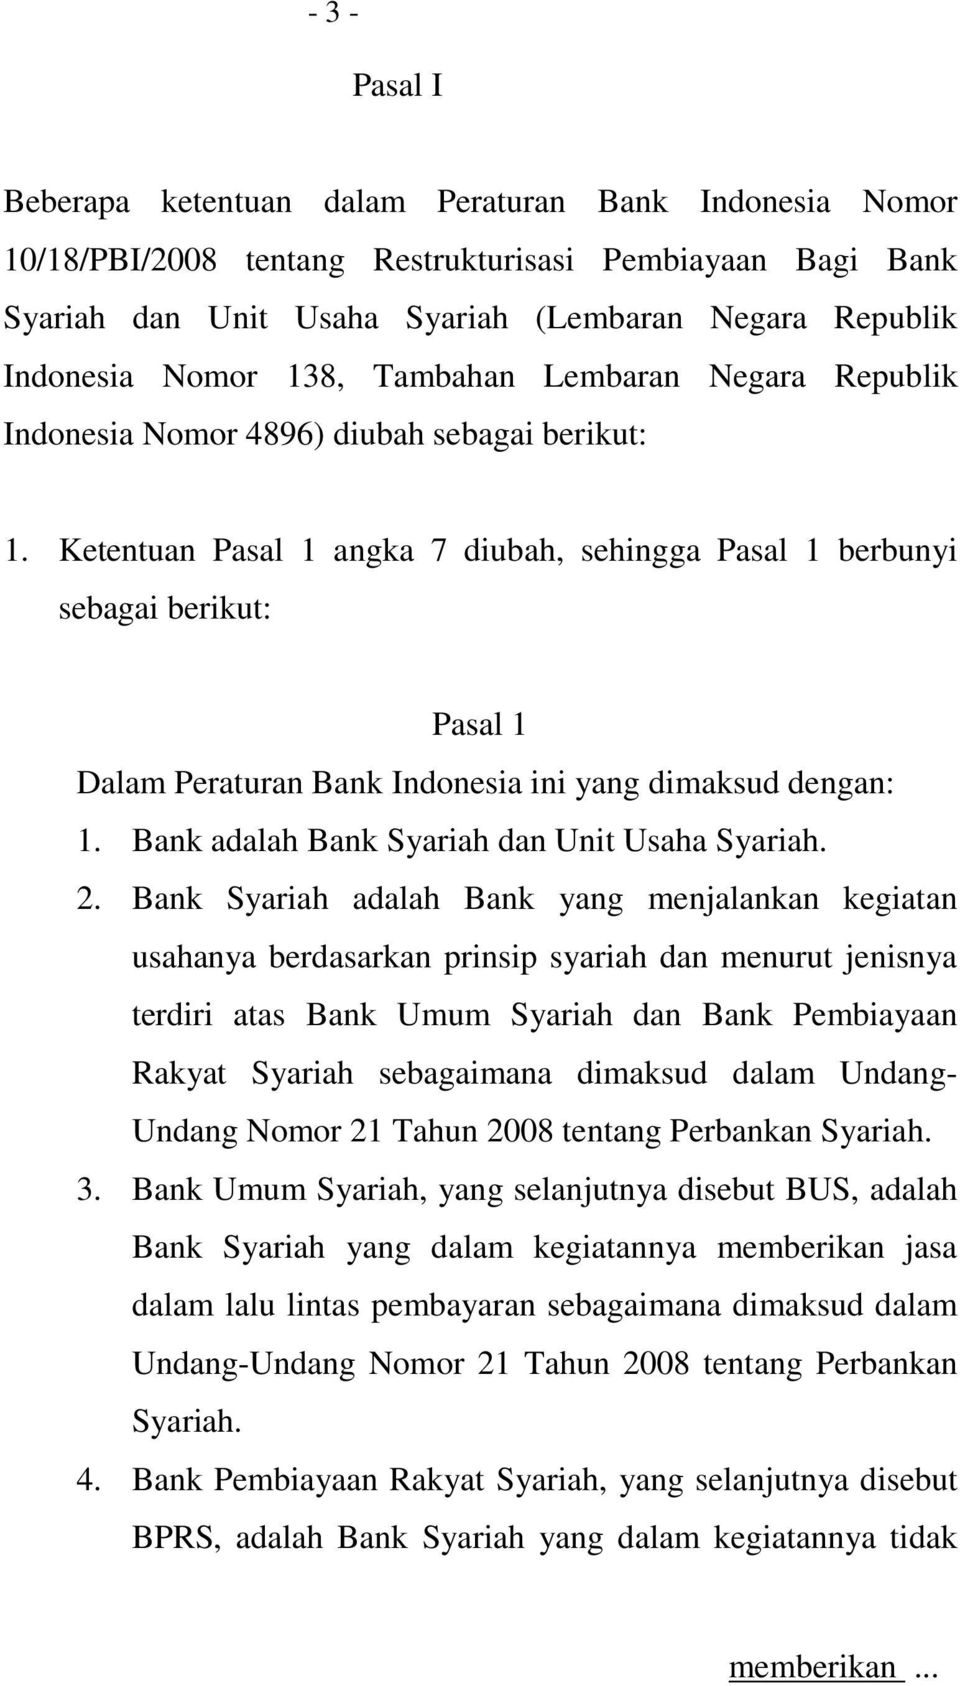 Ketentuan Pasal 1 angka 7 diubah, sehingga Pasal 1 berbunyi sebagai berikut: Pasal 1 Dalam Peraturan Bank Indonesia ini yang dimaksud dengan: 1. Bank adalah Bank Syariah dan Unit Usaha Syariah. 2.